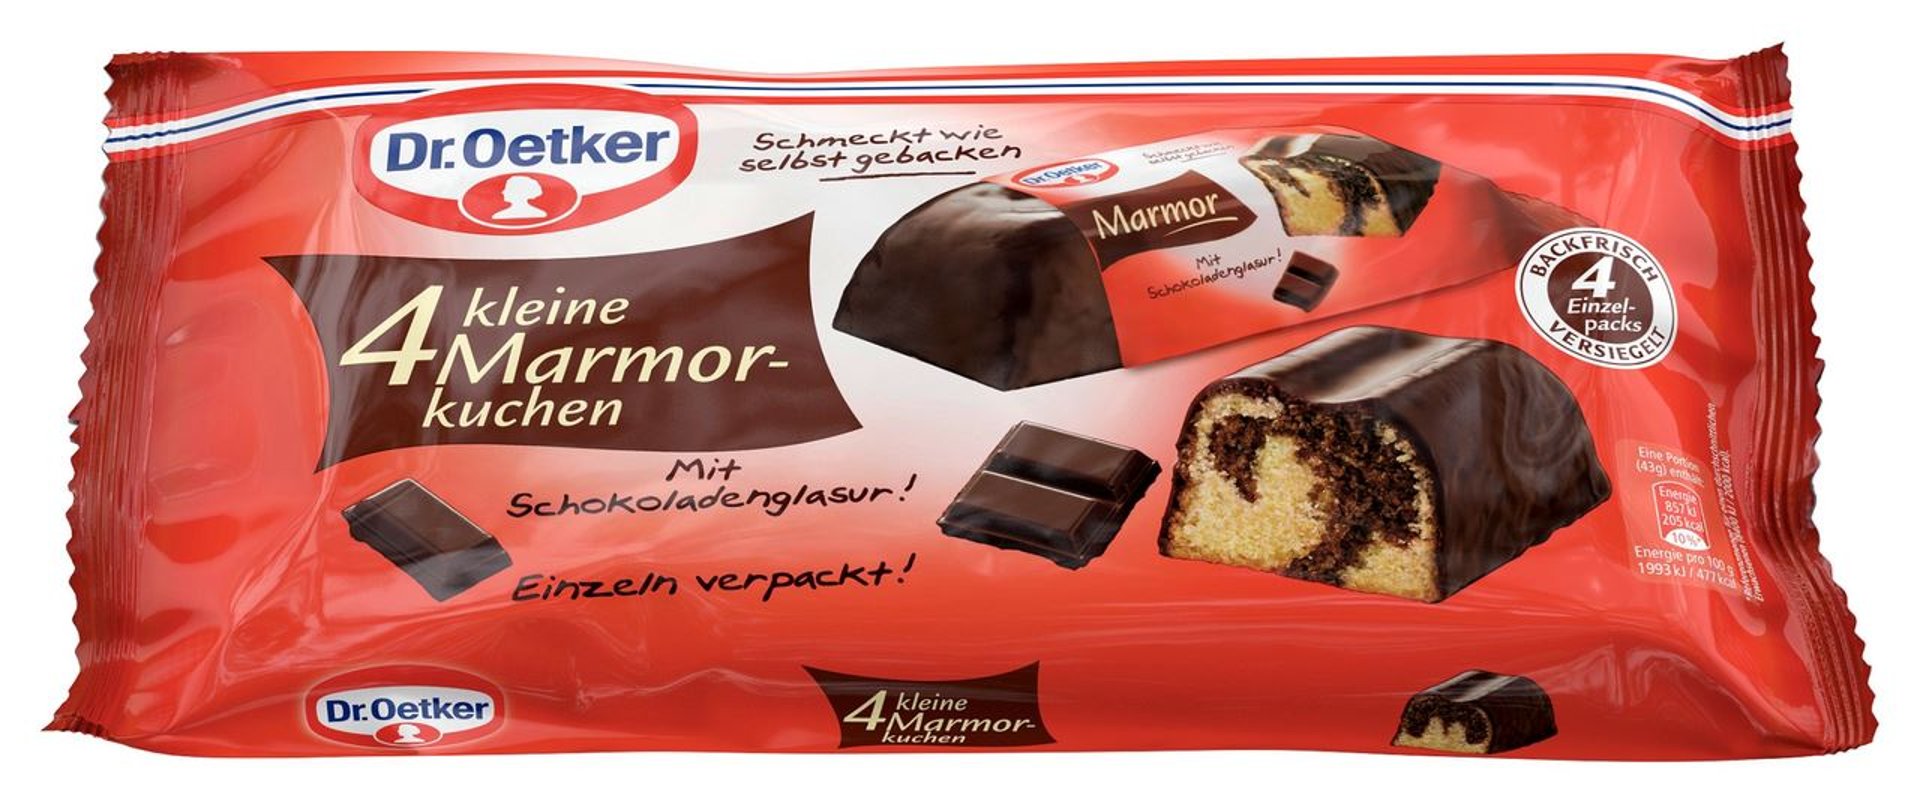 Dr. Oetker - Fertiger Kleiner Marmorkuchen Rührkuchen überzogen mit Schokolade, 4 Stück à 43 g 172 g Beutel